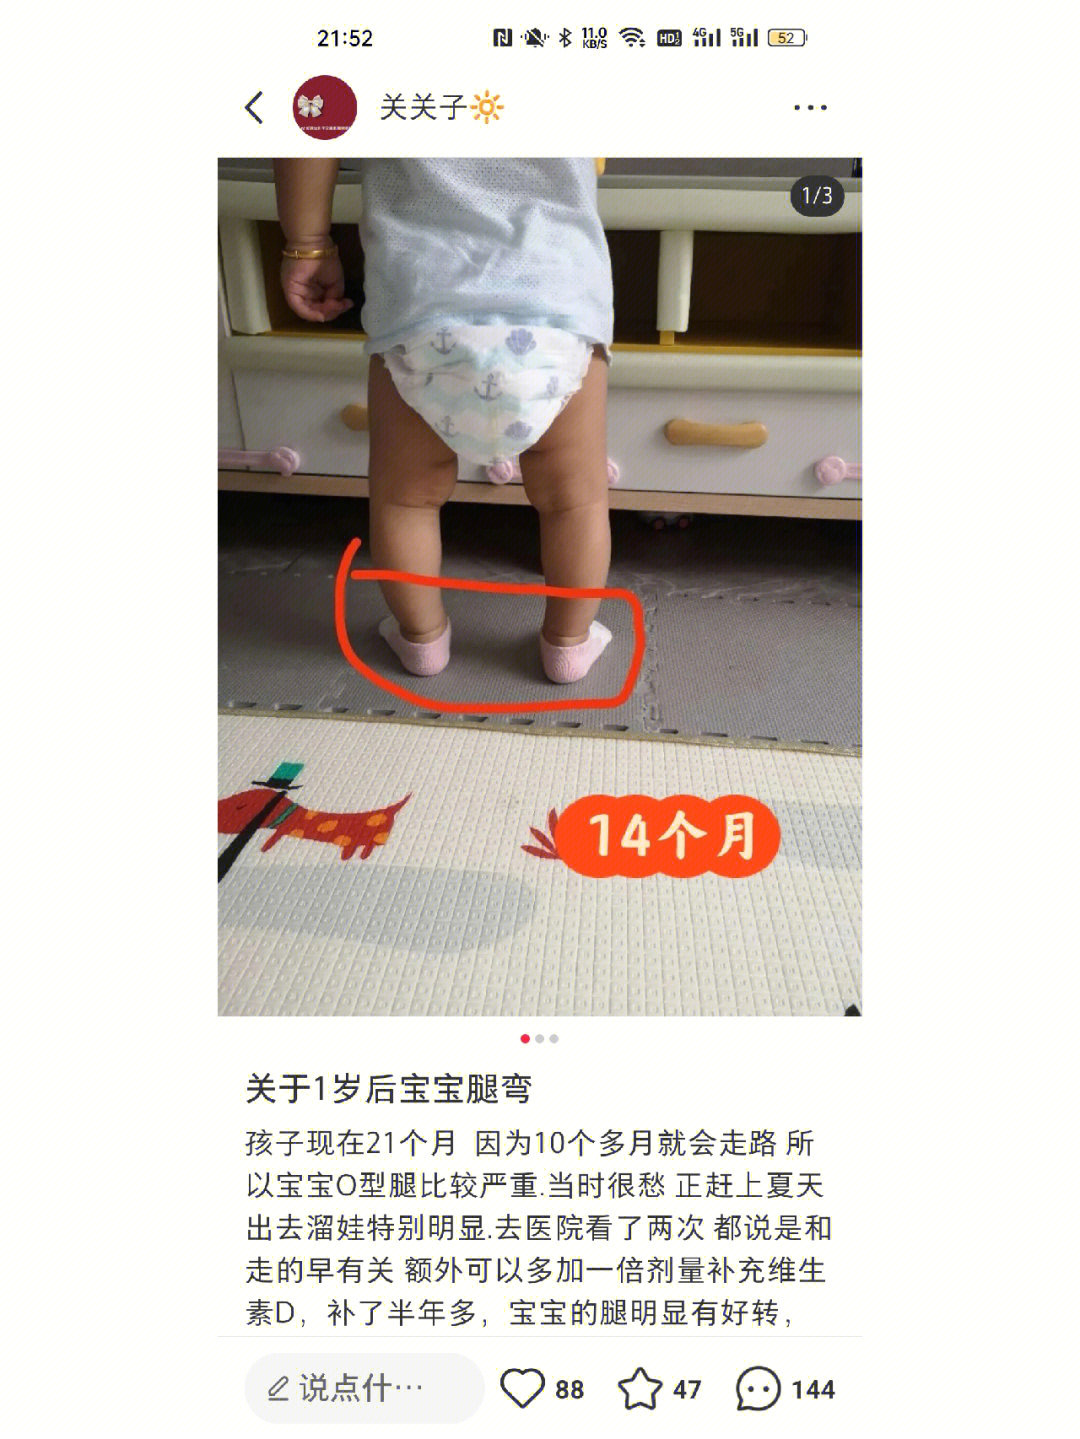 婴儿不正常腿型图4月图片